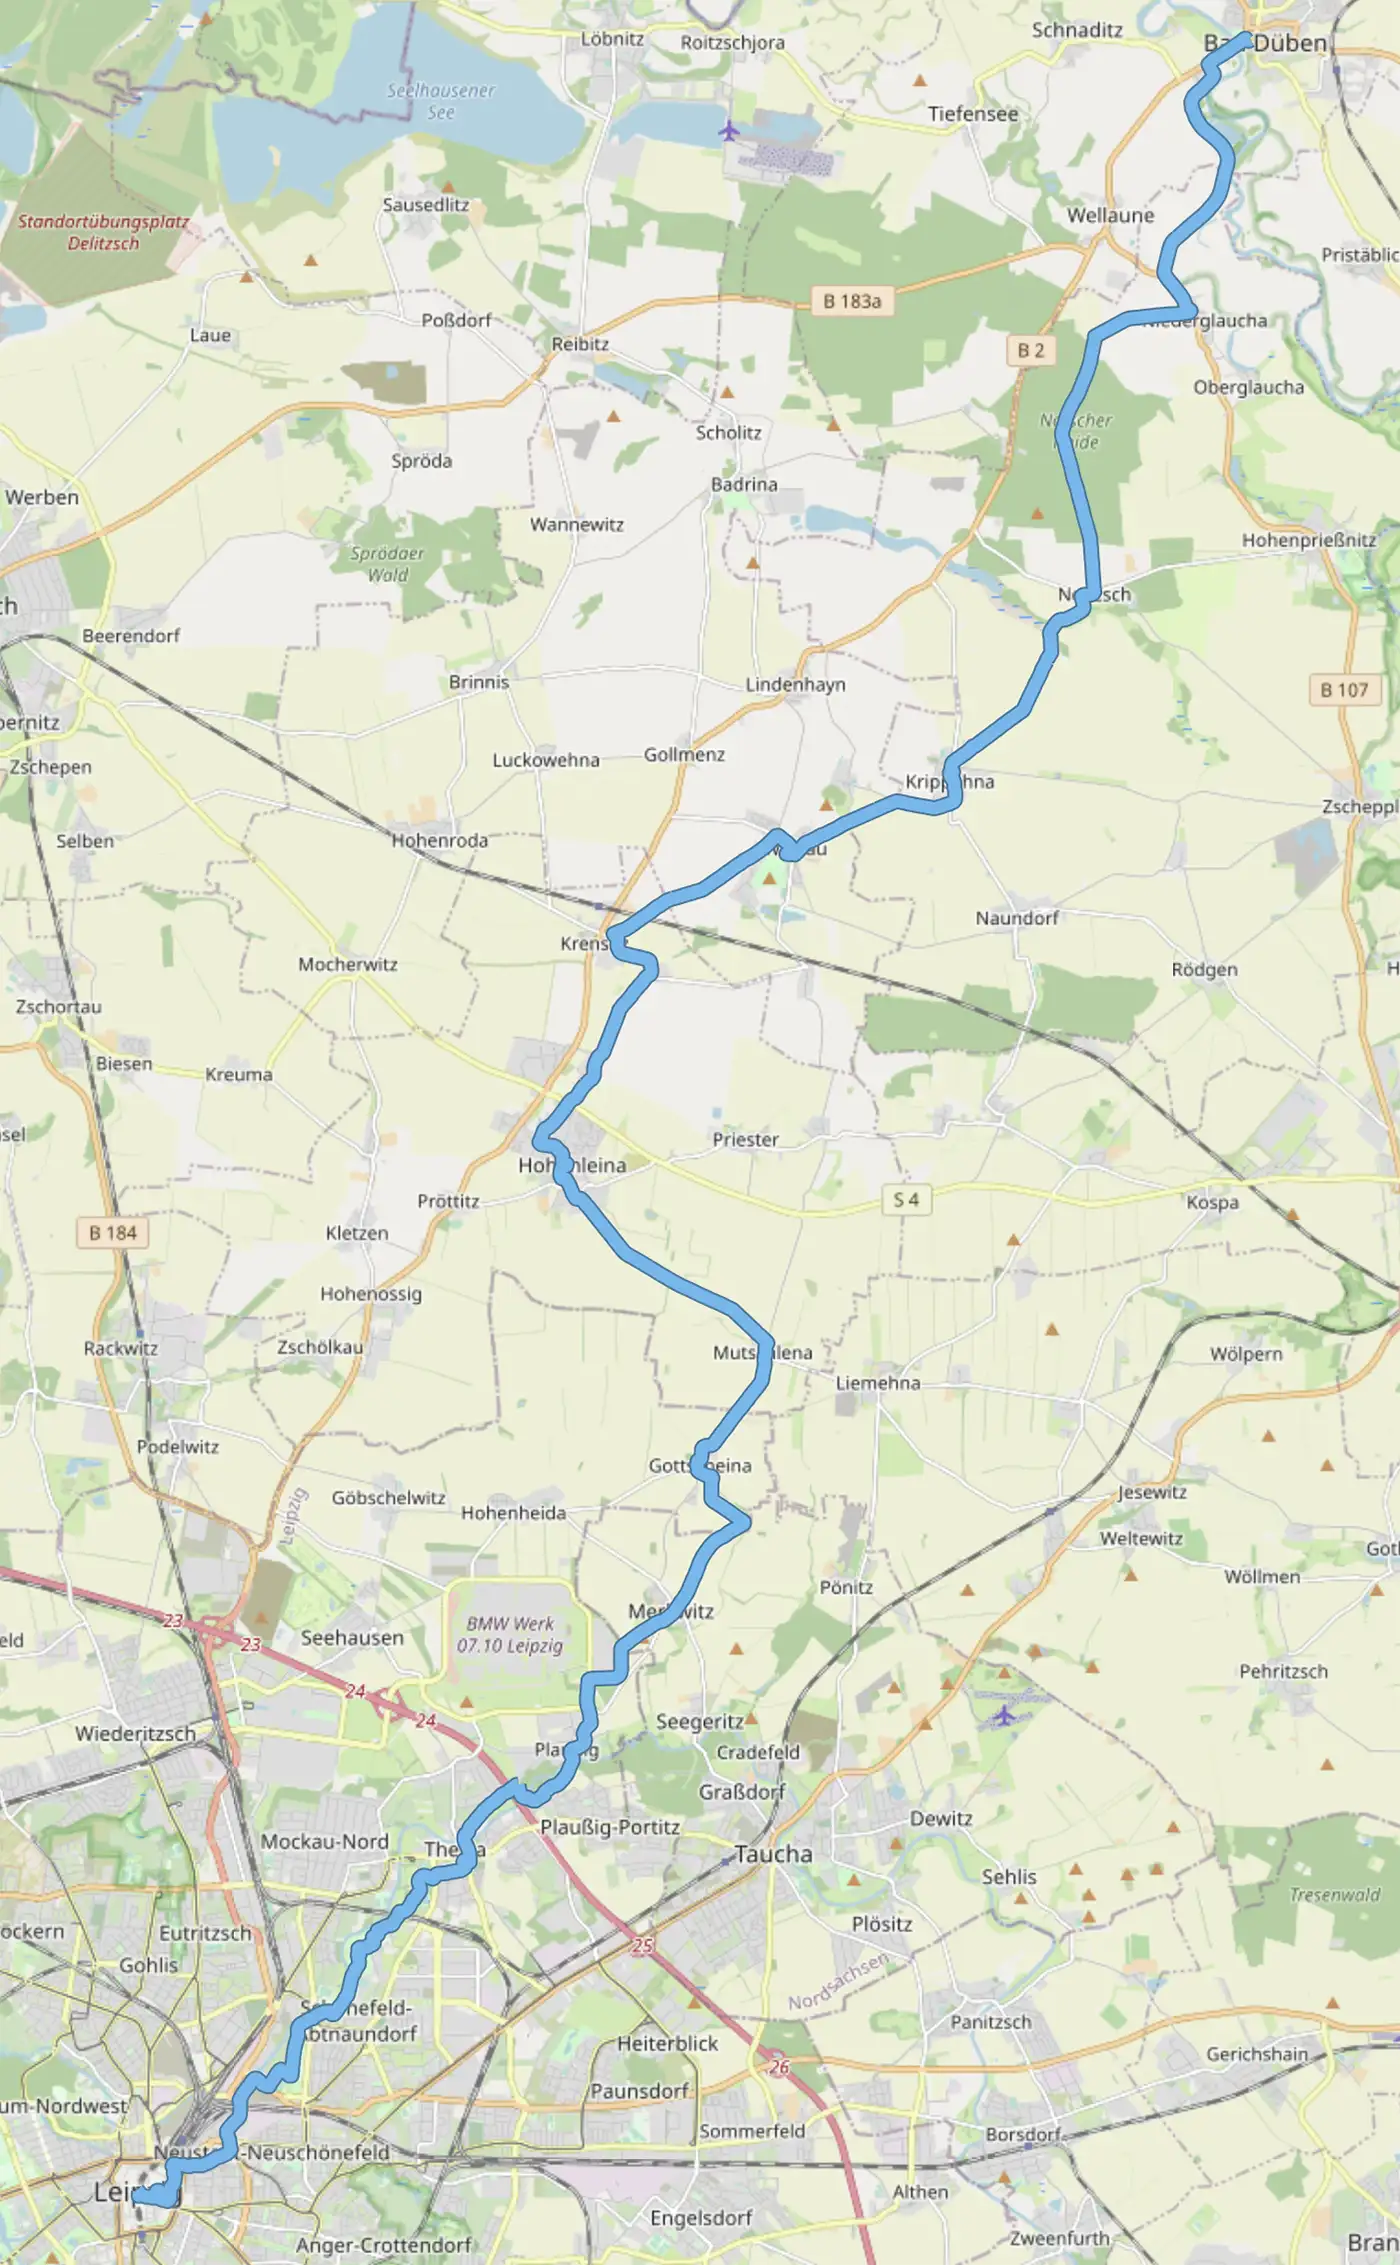 Karte mit der Strecke von Bad Düben über Glaucha, Noitzsch, Krippehna, Mutschlena, Gottscheina und Merkwitz nach Leipzig